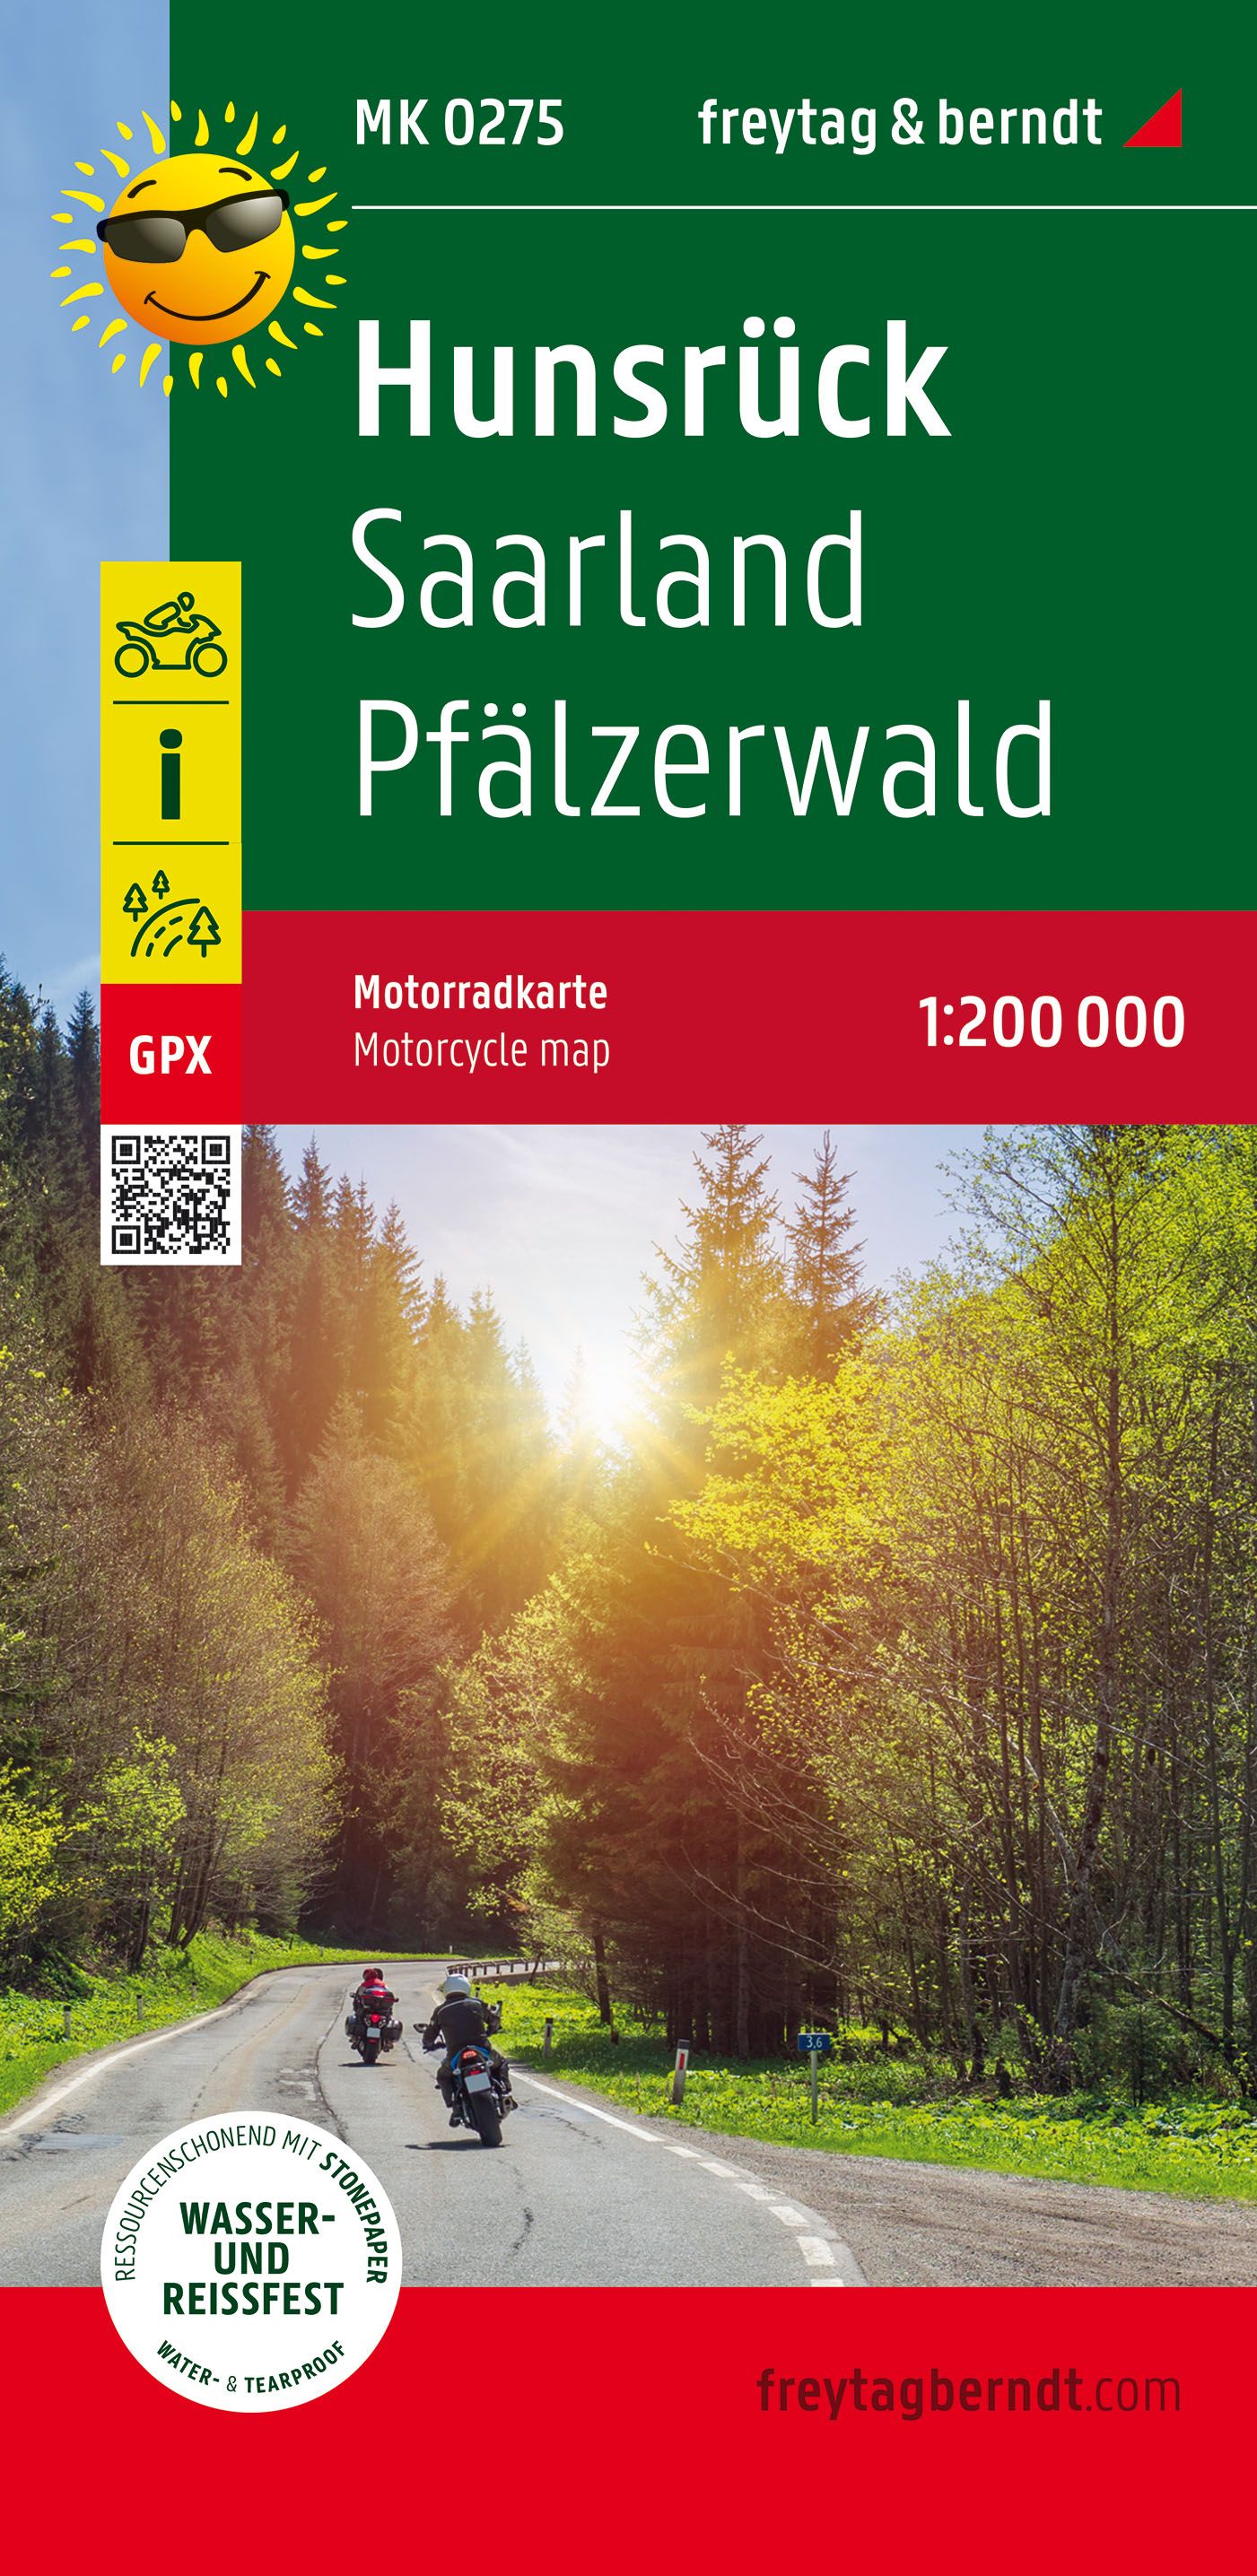 Motorradkarte Hunsrück - Saarland - Pfälzerwald 1:200.000 - Freytag & Berndt